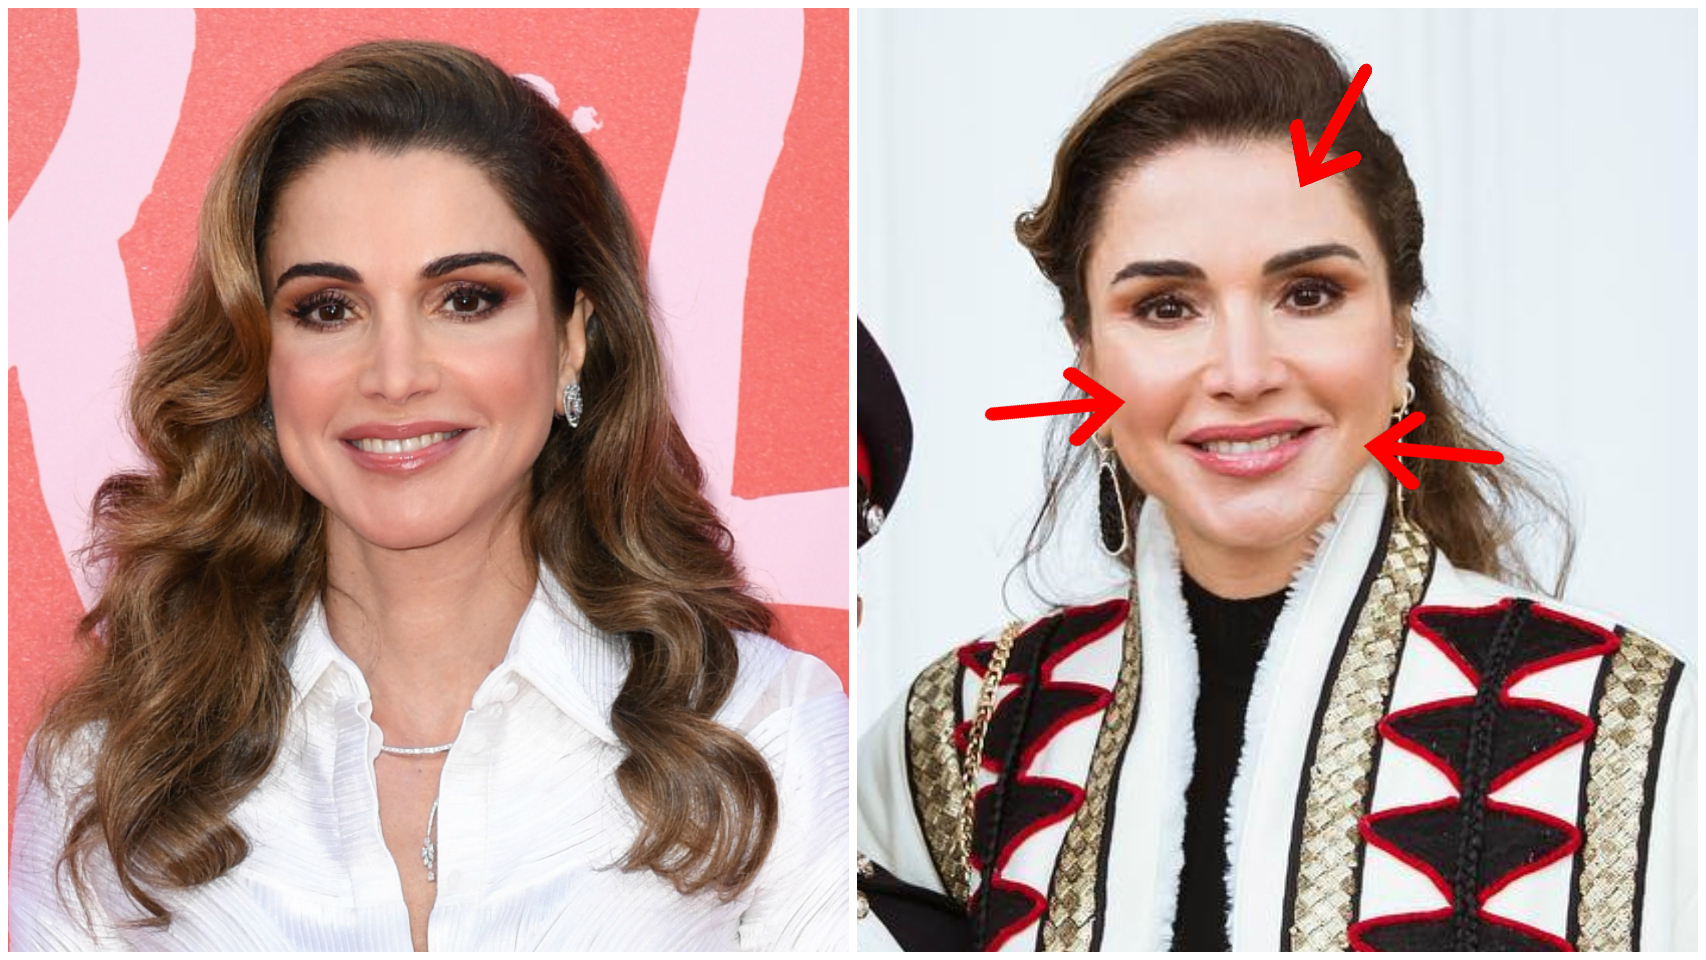 Rania de Jordania en una imagen de hace un año (izquierda) y en una imagen reciente (derecha).